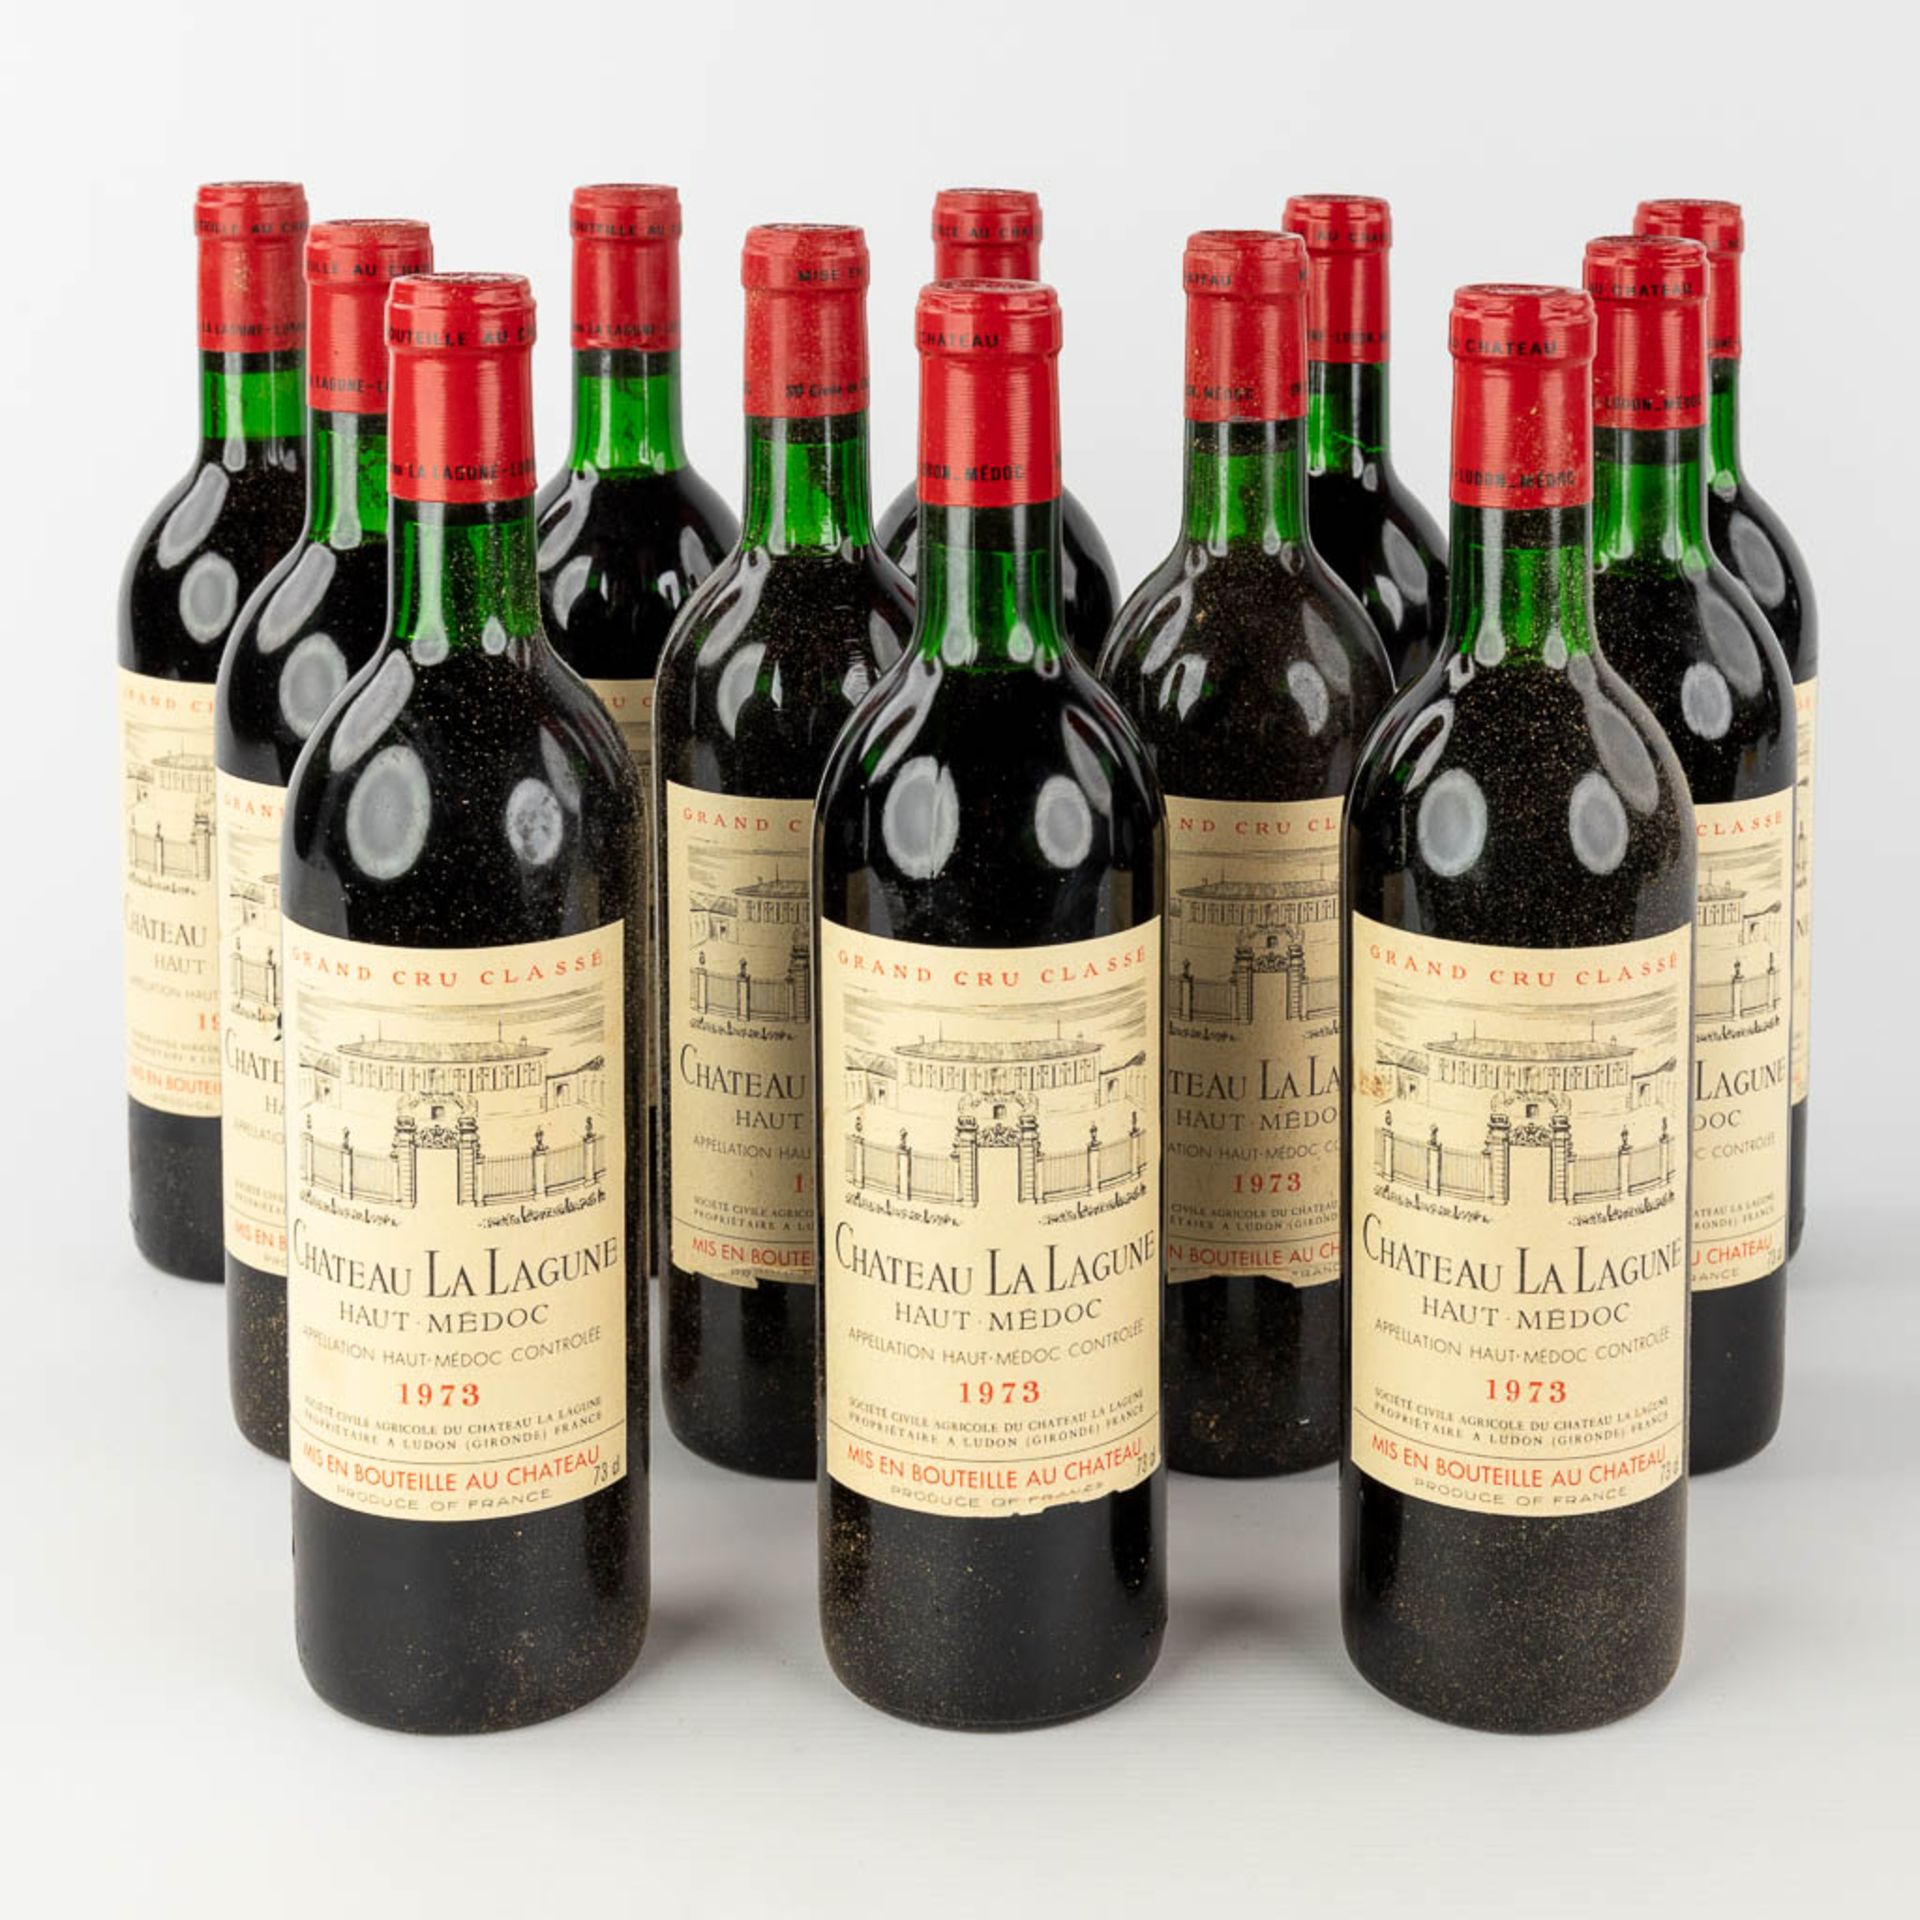 Château La Lagune Haut Médoc, 1973, 12 bottles.